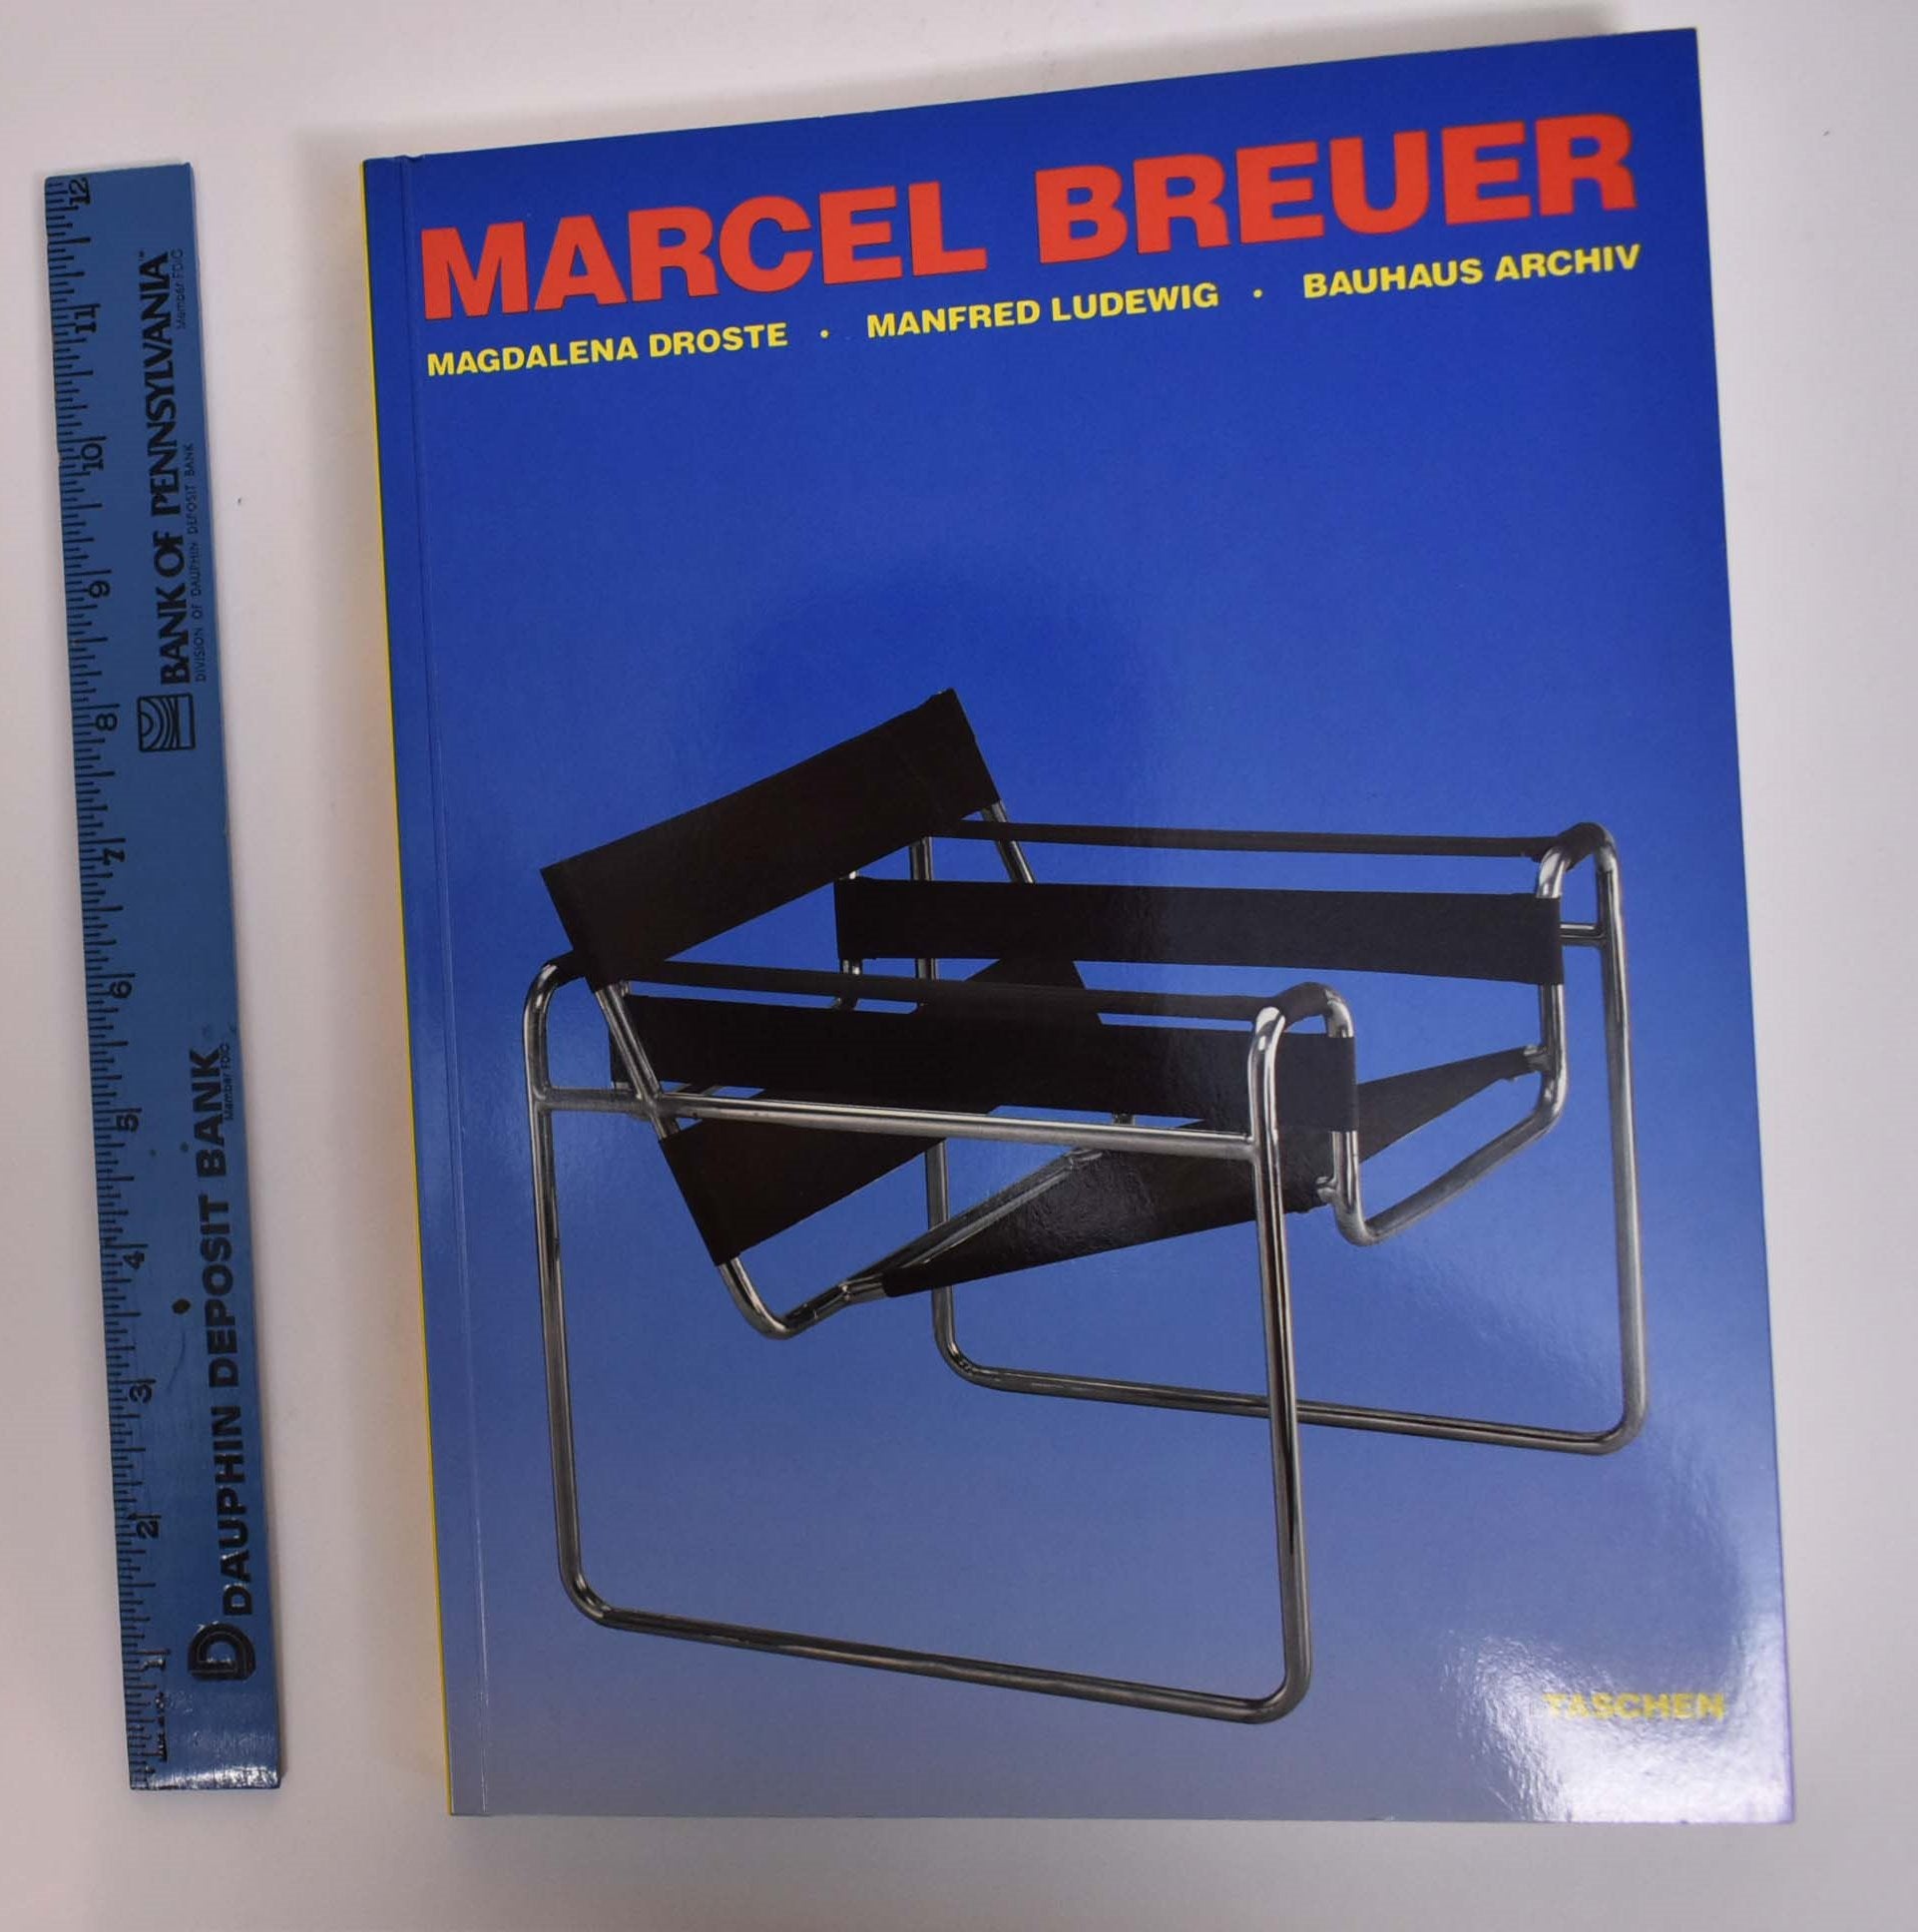 Marcel Breuer Design | Magdalena Droste, Manfred Ludewig